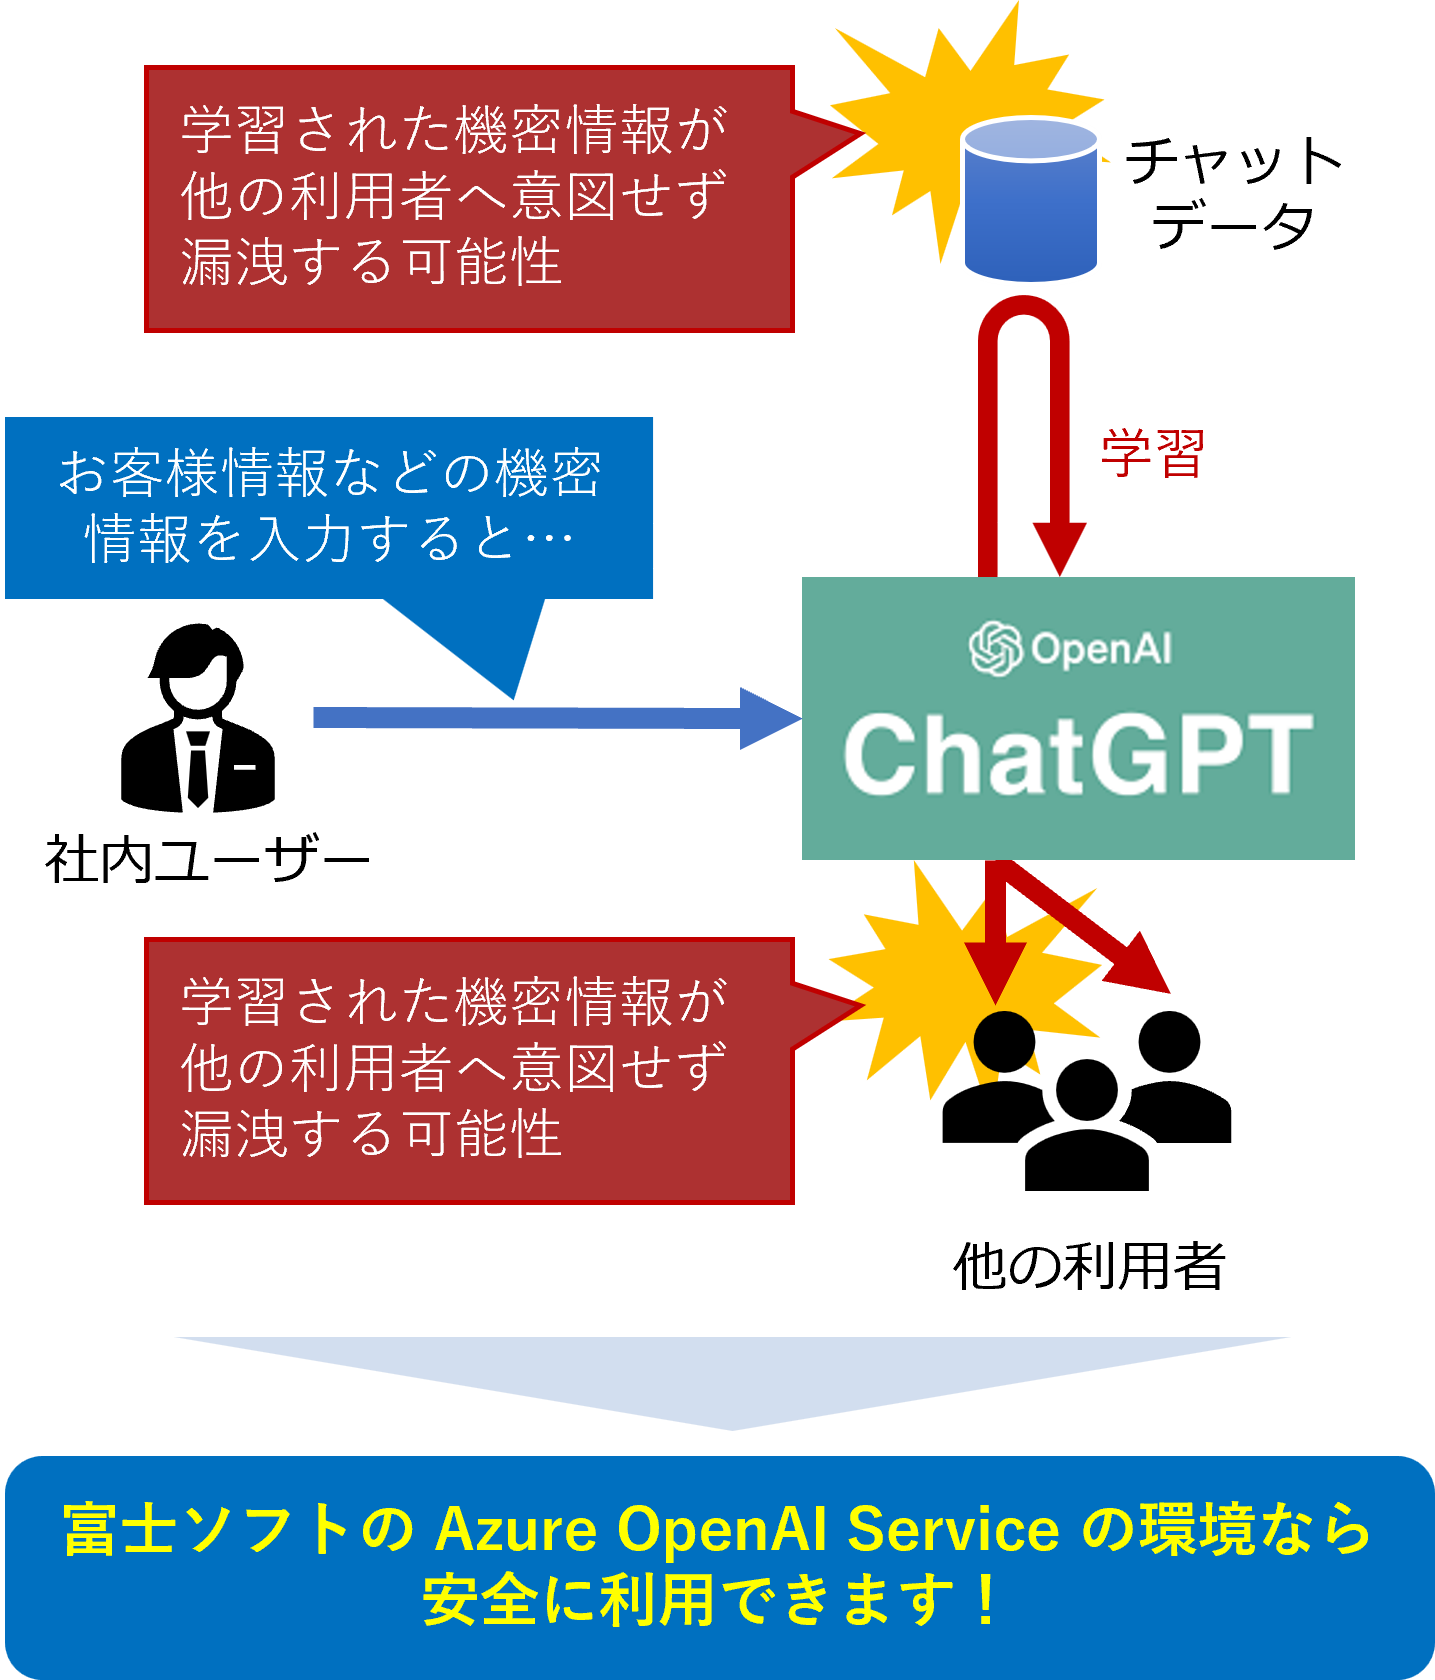 一般公開の ChatGPT の問題